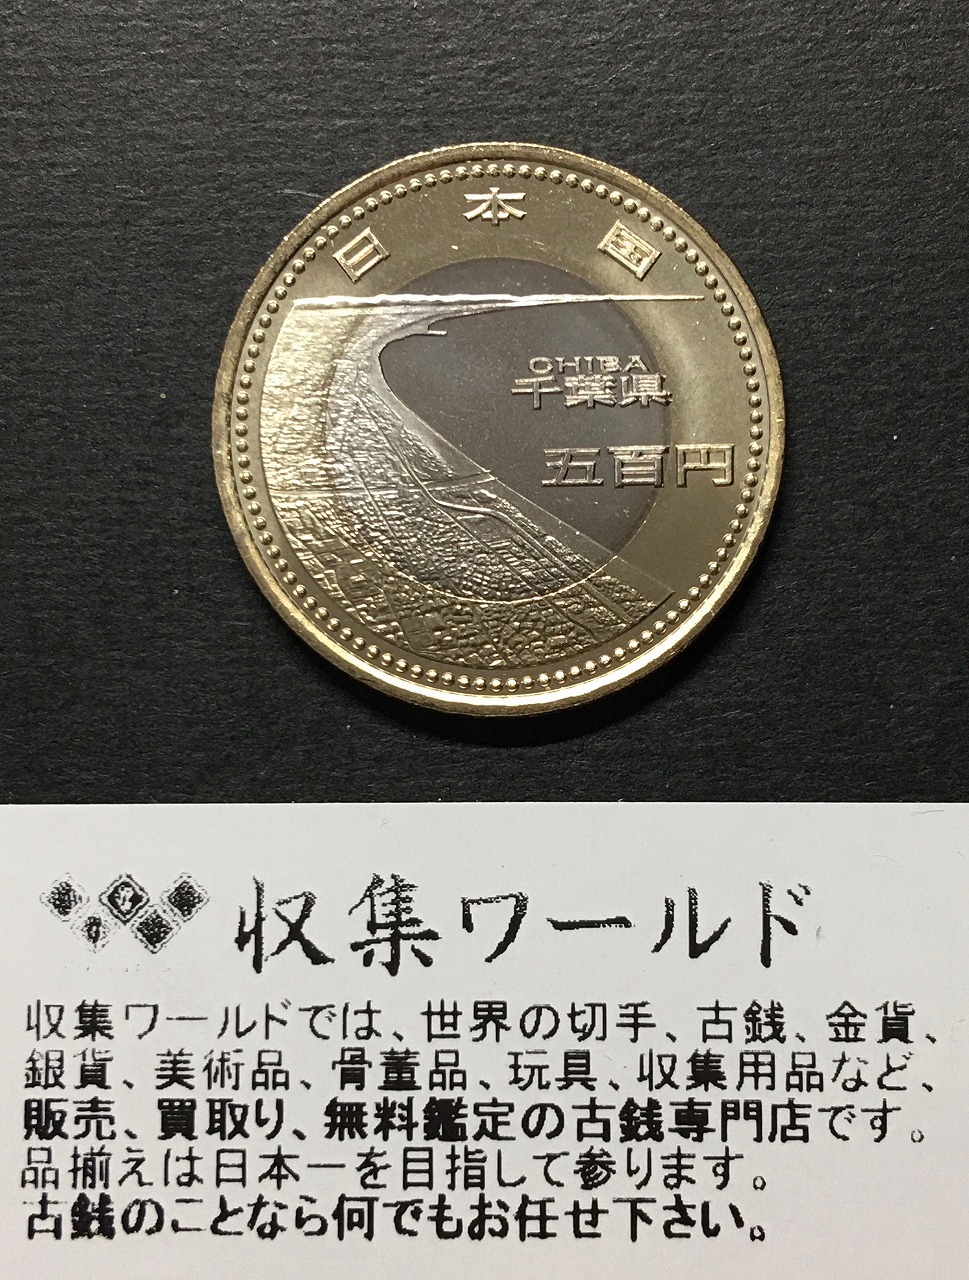 500円バイカラークラッド貨 地方自治法施行60周年記念貨幣 奈良県 